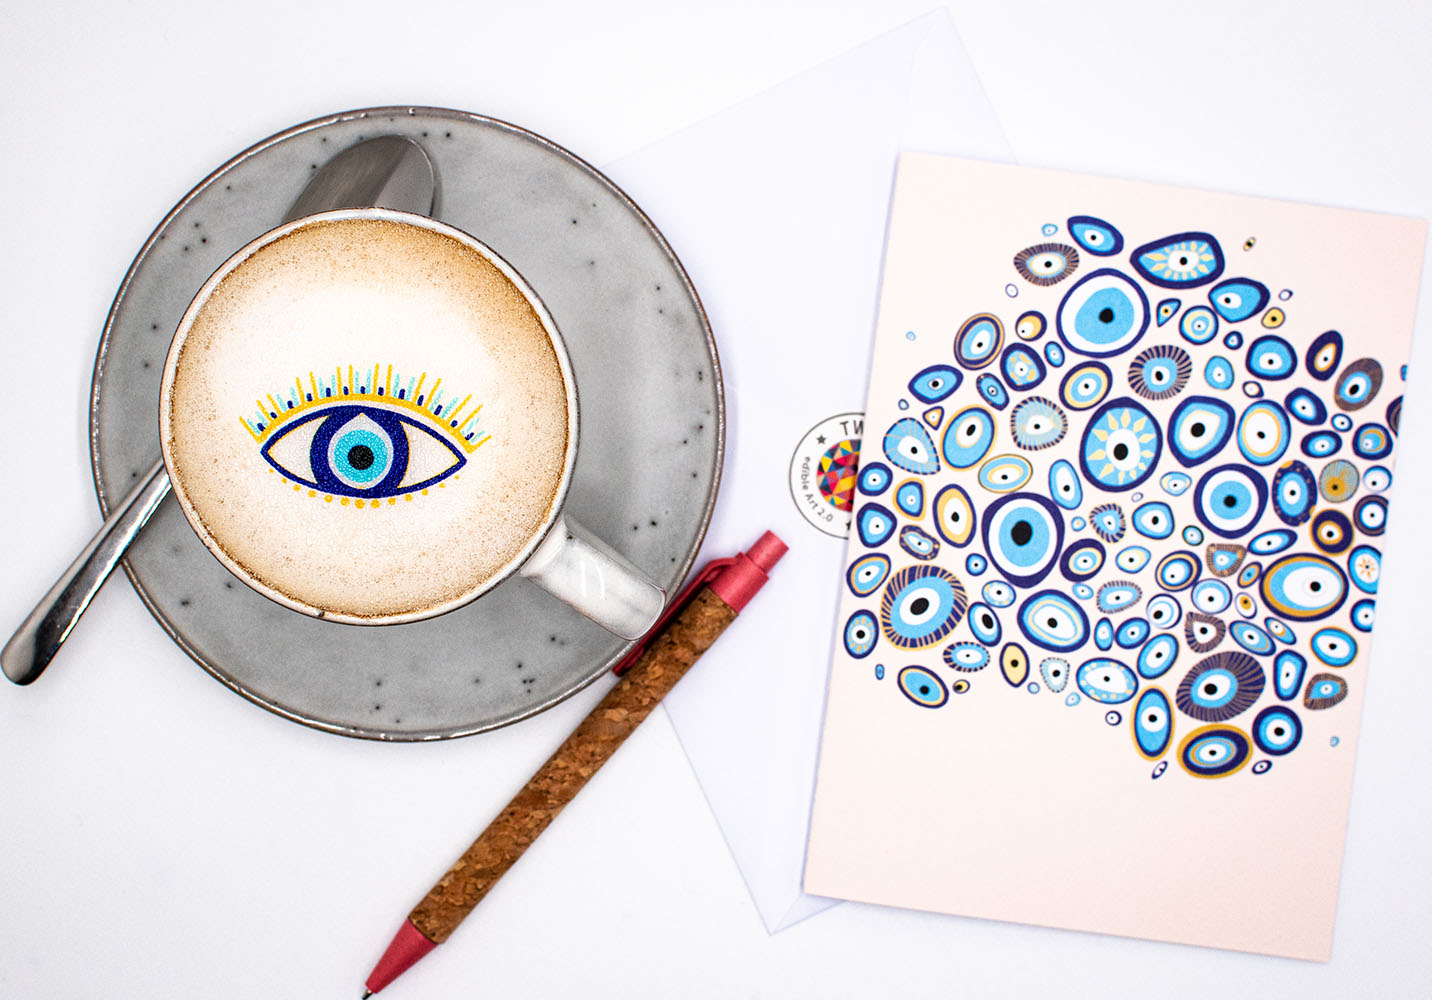 Twicky Sticky Nazar Auge auf Cappuccino in grauer Tasse. Rechts neben der Tasse Grußkarte anatomisches Herz mit Umschlag und Kugelschreiber